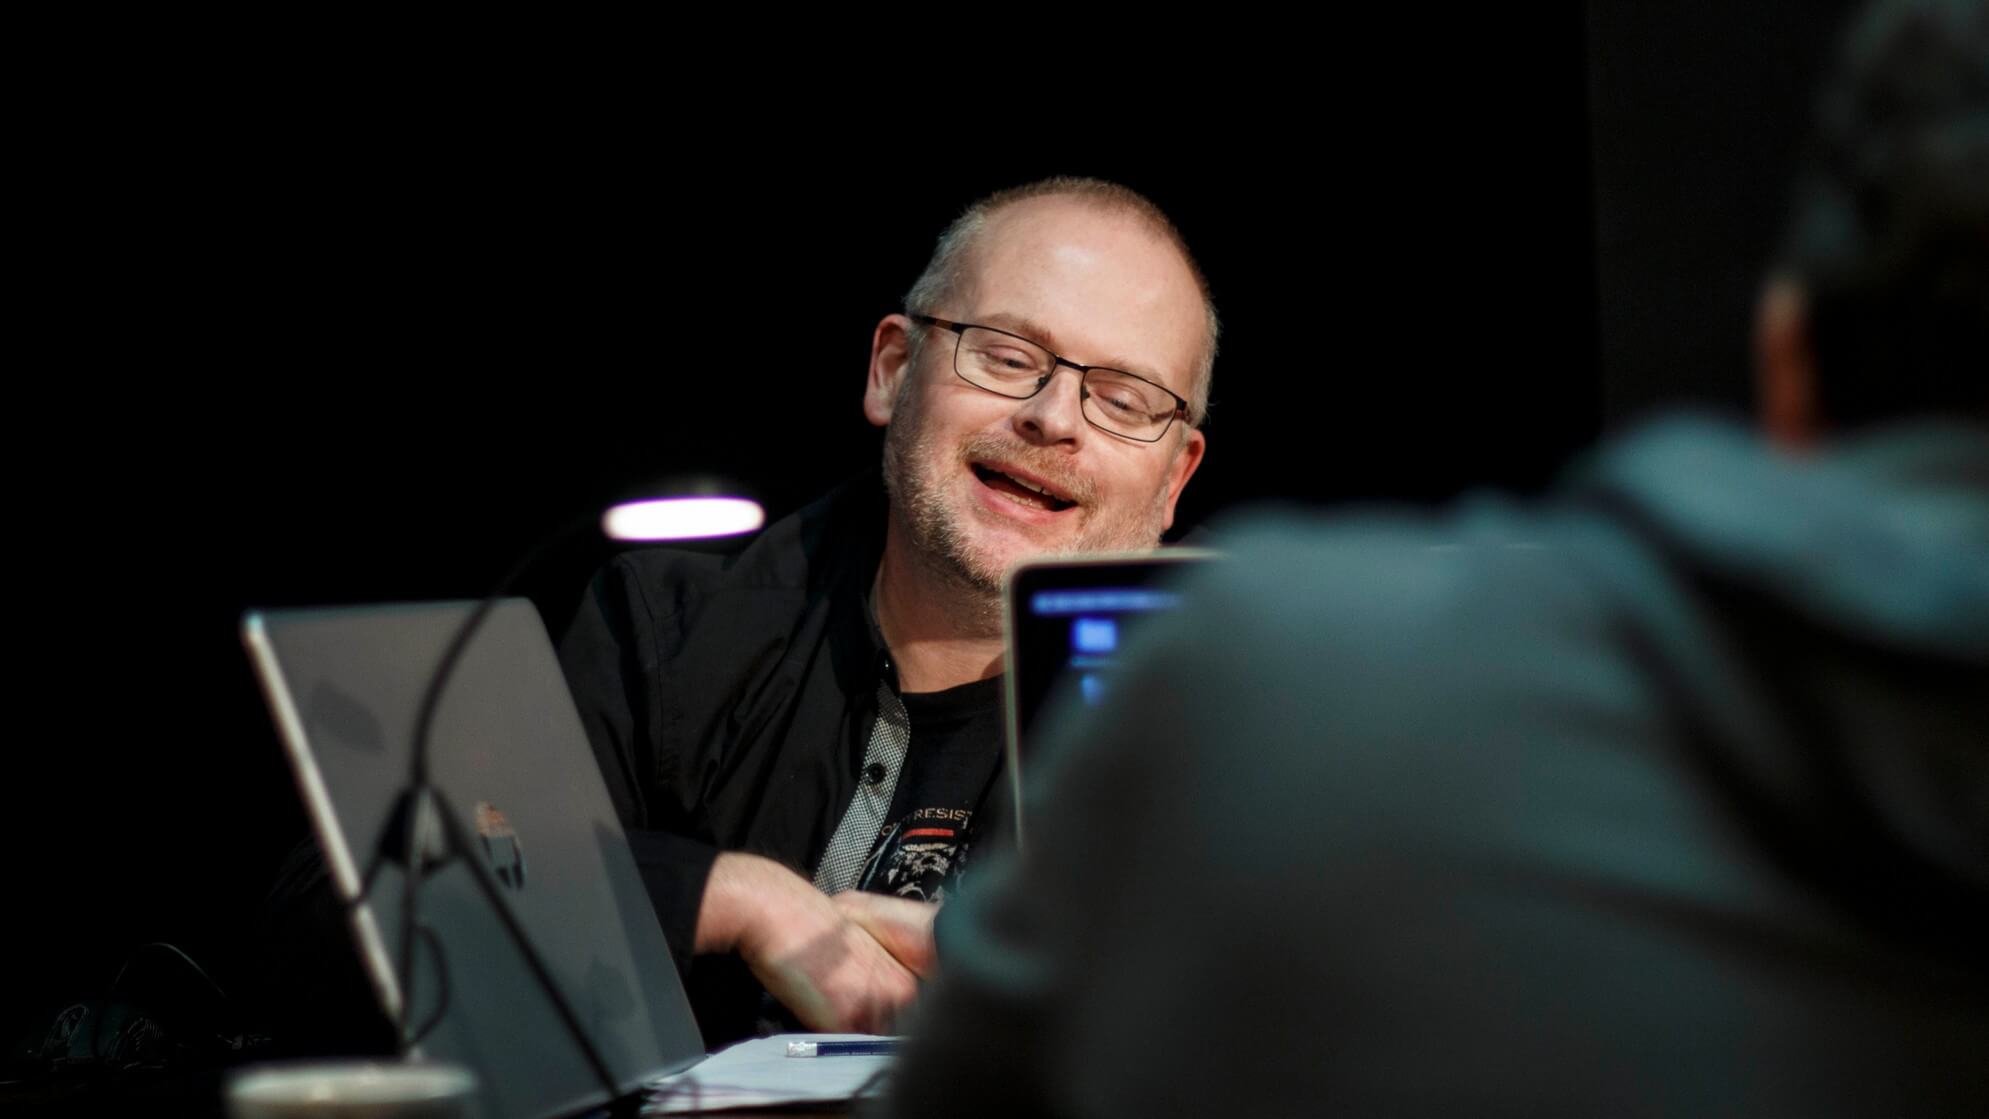 mężczyzna na środku w okularach ubrany na czarno, uśmiecha się, siedzi przy stoliku na którym stoi laptop